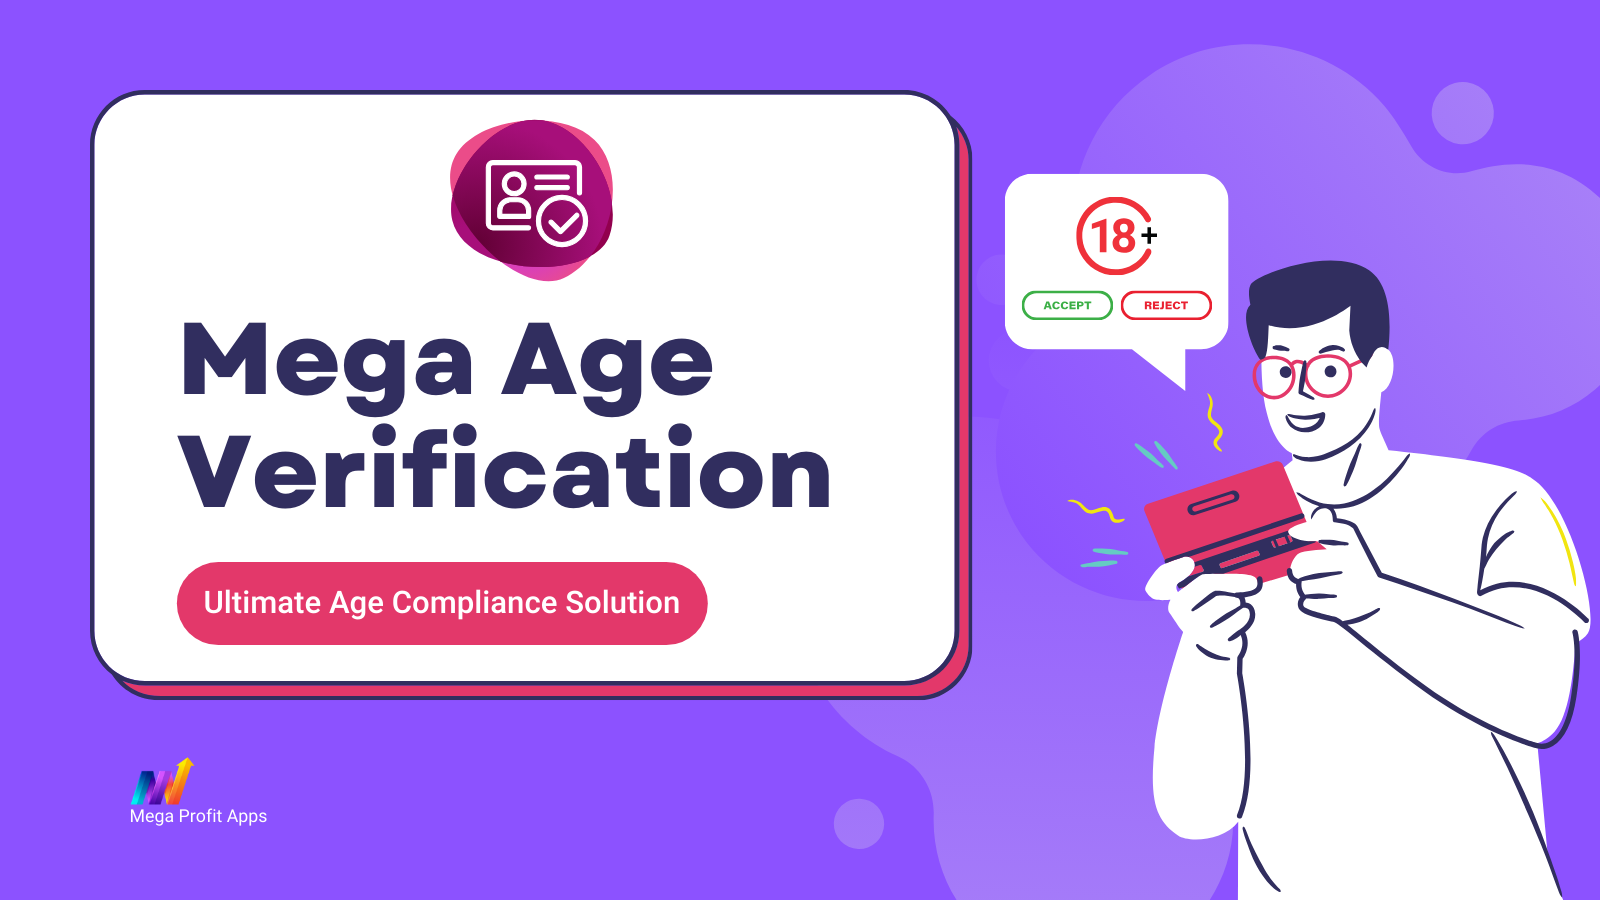 Mega Age Verification - Ensure legal compliance effortlessly